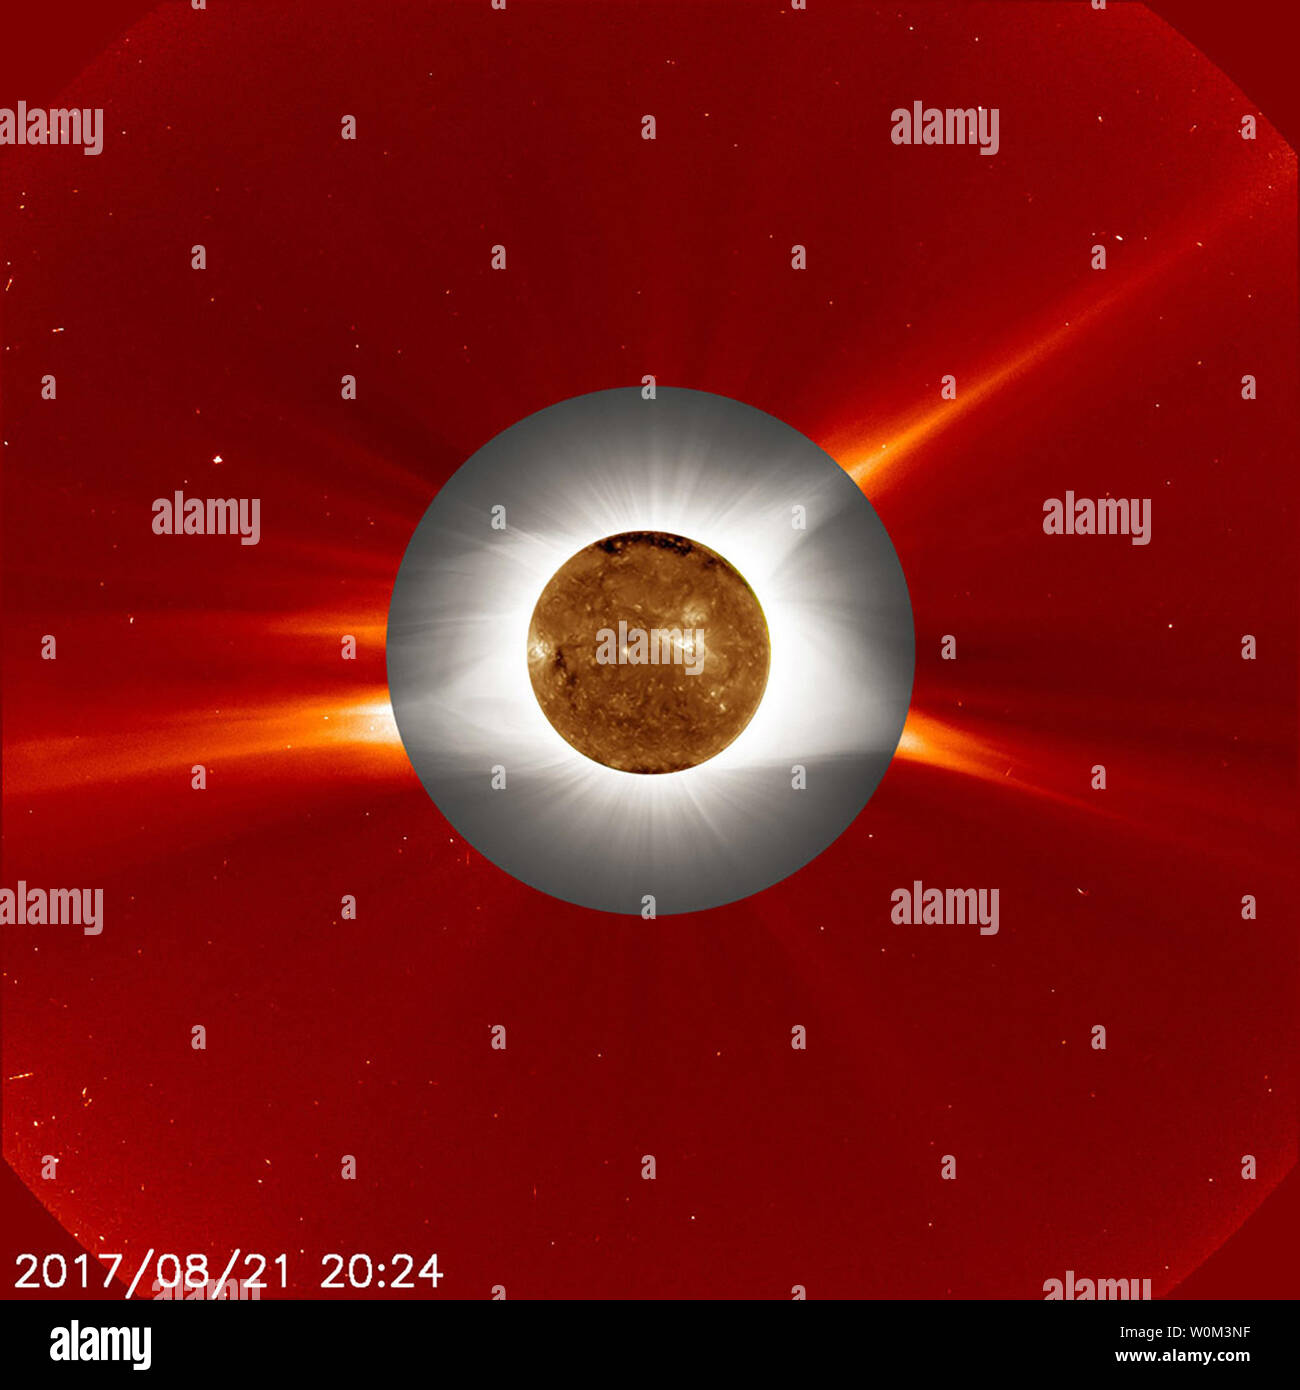 Un image de l'éclipse solaire totale le 21 août 2017, (gray, anneau central), est superposée à une image de l'atmosphère du Soleil, appelé le corona (rouge, anneau ultrapériphériques), comme vu par l'ESA (Agence Spatiale Européenne) et la NASA's Solar and Heliospheric Observatory (SOHO), qui observe le soleil depuis l'espace. Au centre est une image de la surface du soleil comme vu par la NASA's Solar Dynamics Observatory en ultraviolet extrême d'ondes de la lumière. Au cours d'une éclipse solaire totale, les télescopes terrestres peuvent observer la partie la plus basse de la couronne solaire d'une façon qui ne peut pas être fait à n'importe quel autre moment, comme Banque D'Images